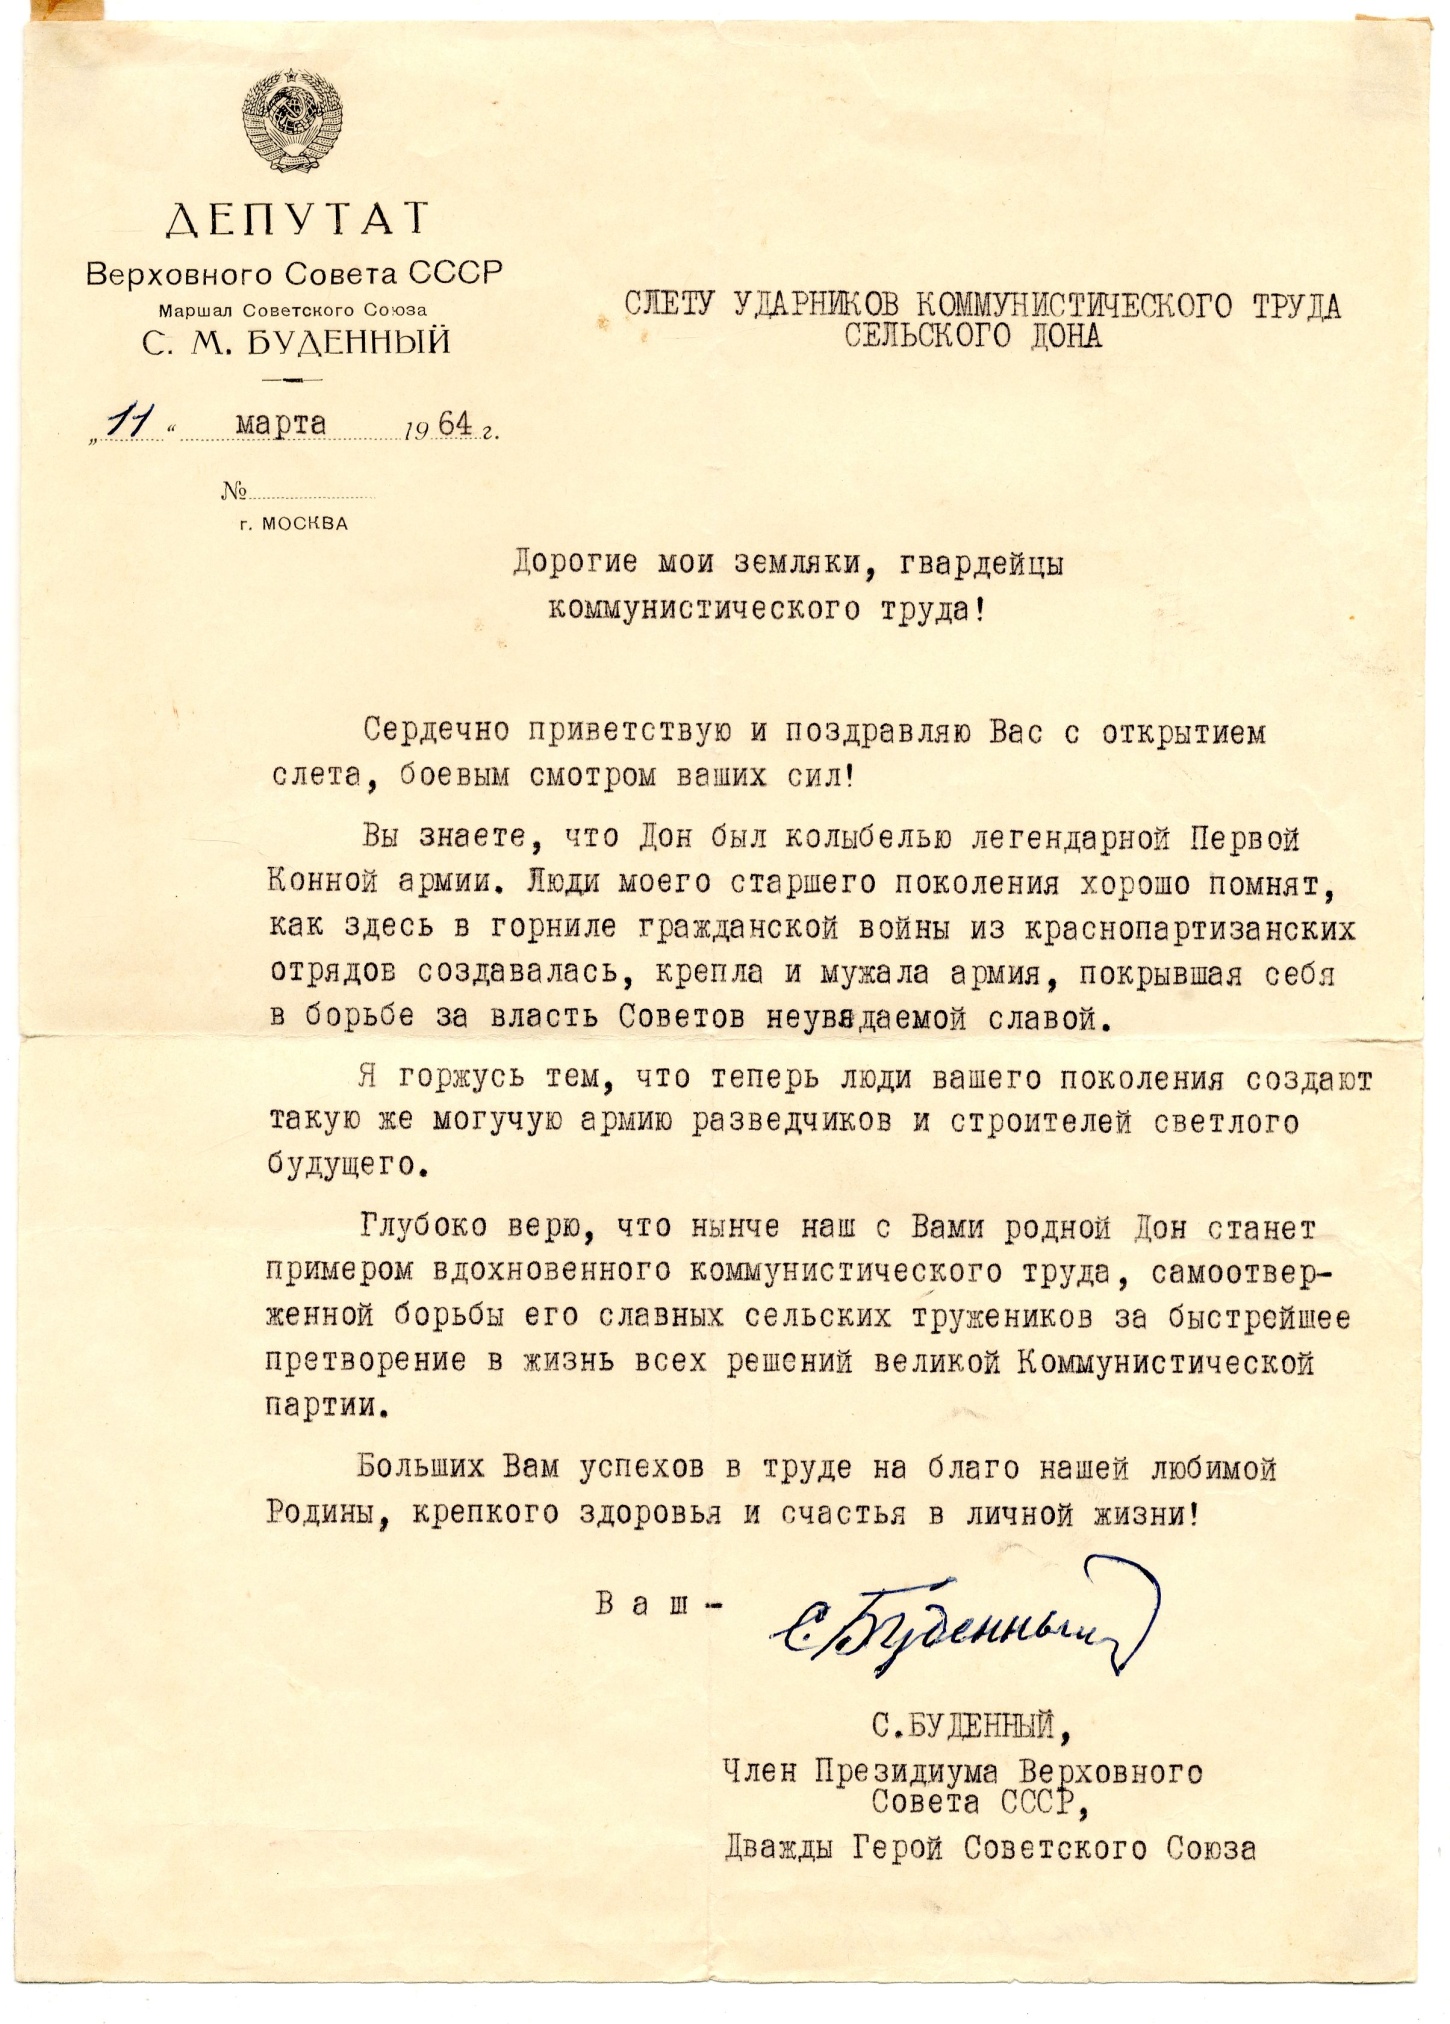 Приветственное письмо Буденного С.М. слету ударников коммунистического труда сельского Дона. 1964 год